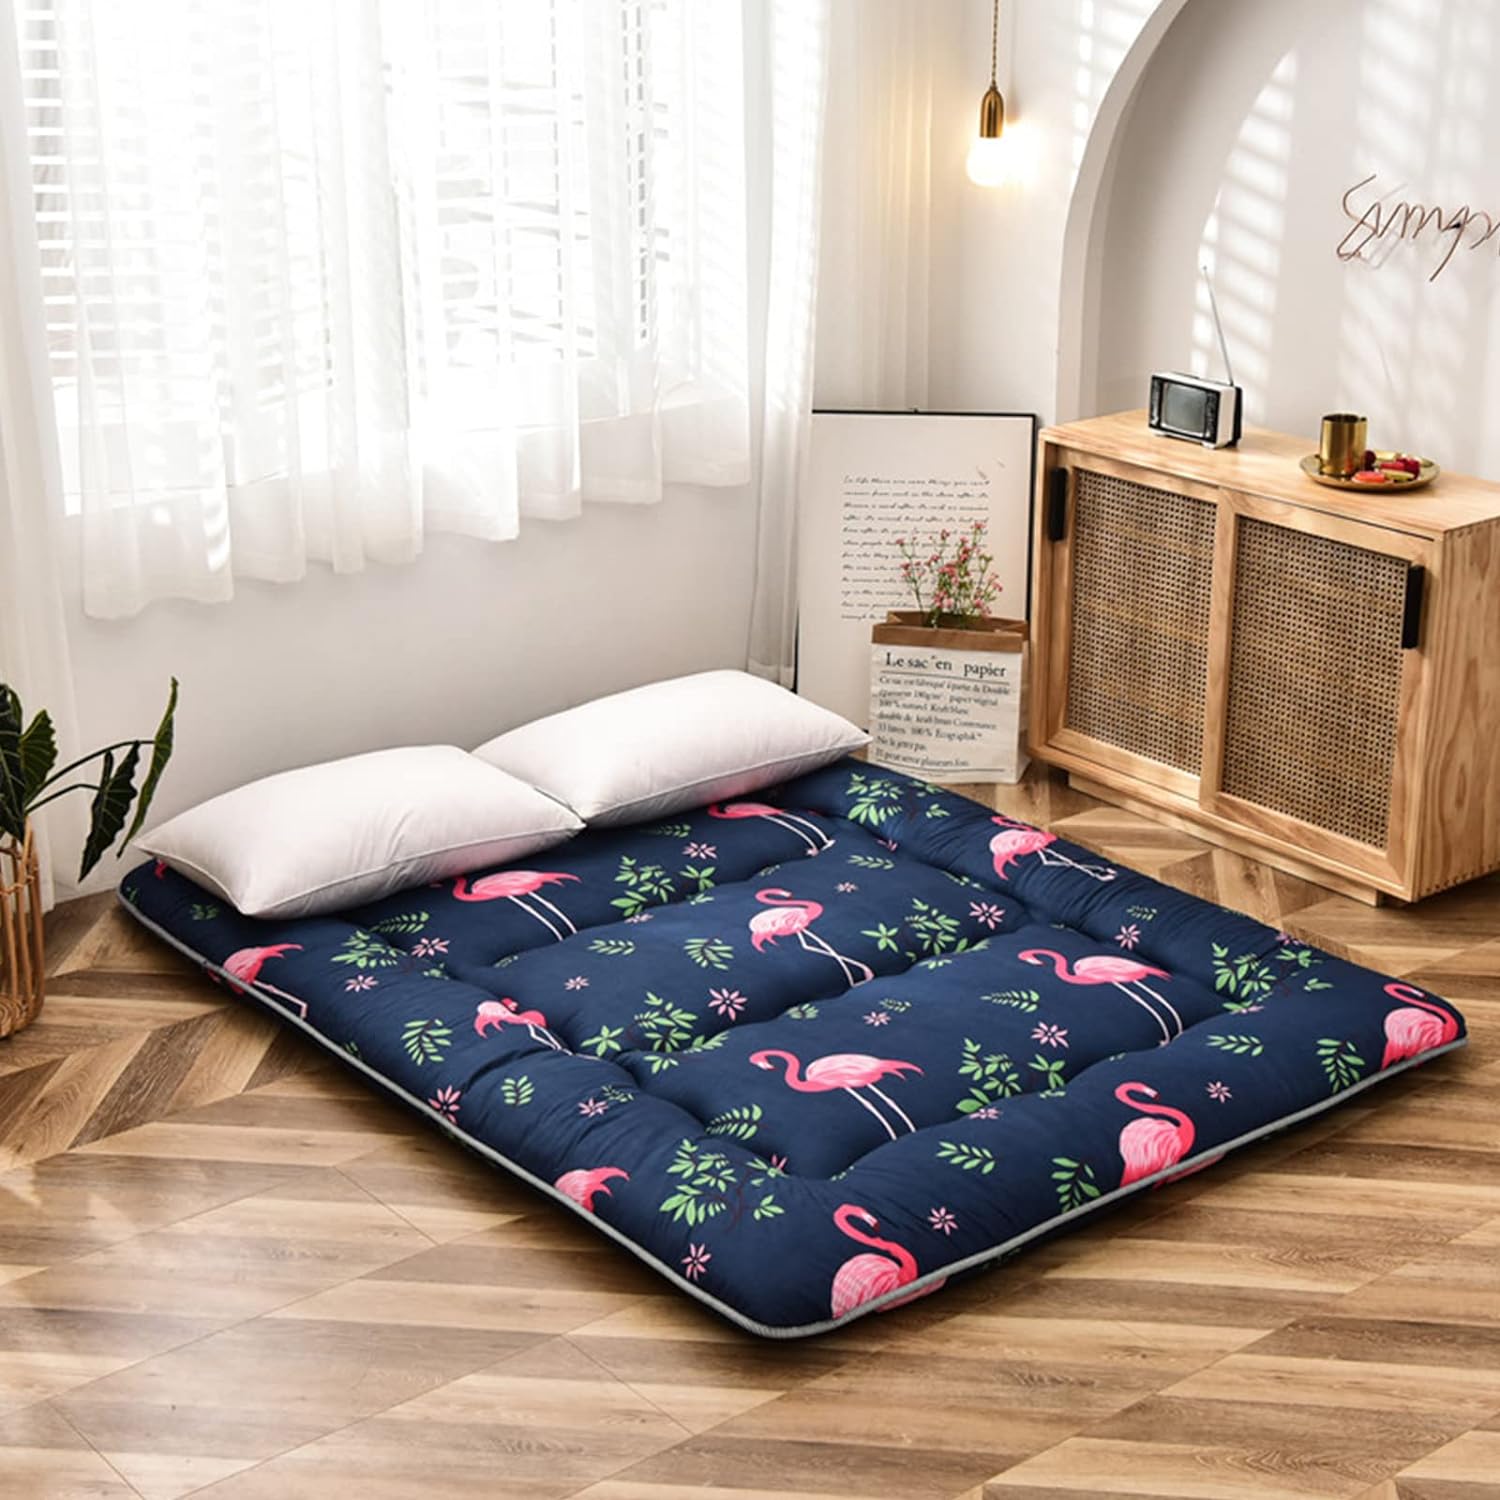 Colchón de futón japonés flamenco para dormir, cama japonesa plegable, -  VIRTUAL MUEBLES